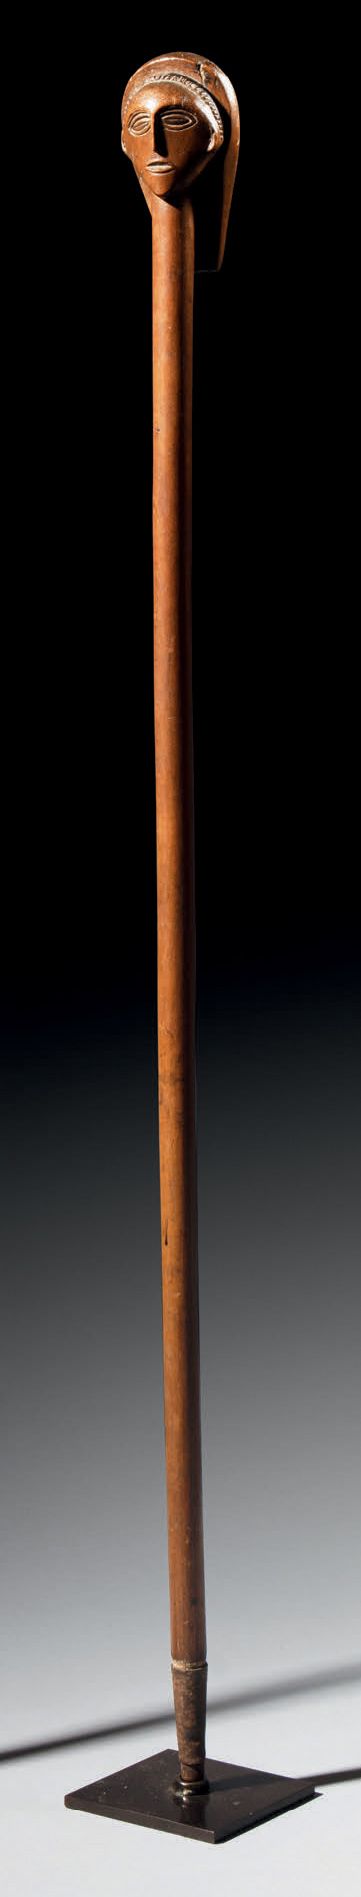 Null - 安哥拉Ovimbundu甘蔗
木头
H.90厘米
笔直的手柄顶部装饰着一个戴着美丽头饰的造型头，落在脖子上。